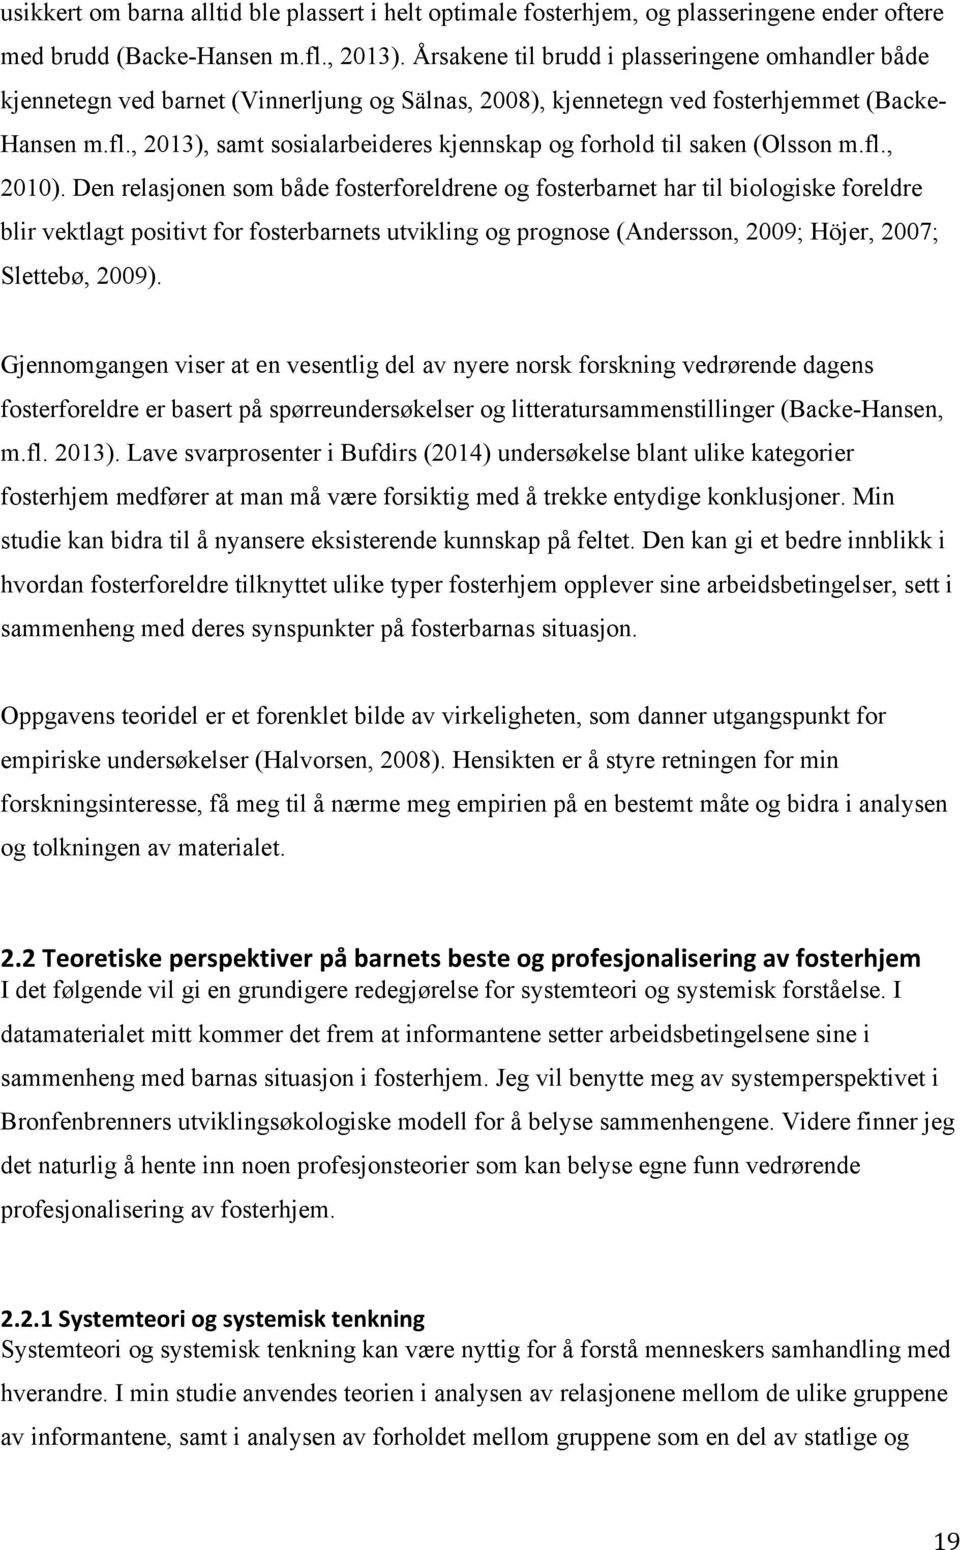 , 2013), samt sosialarbeideres kjennskap og forhold til saken (Olsson m.fl., 2010).